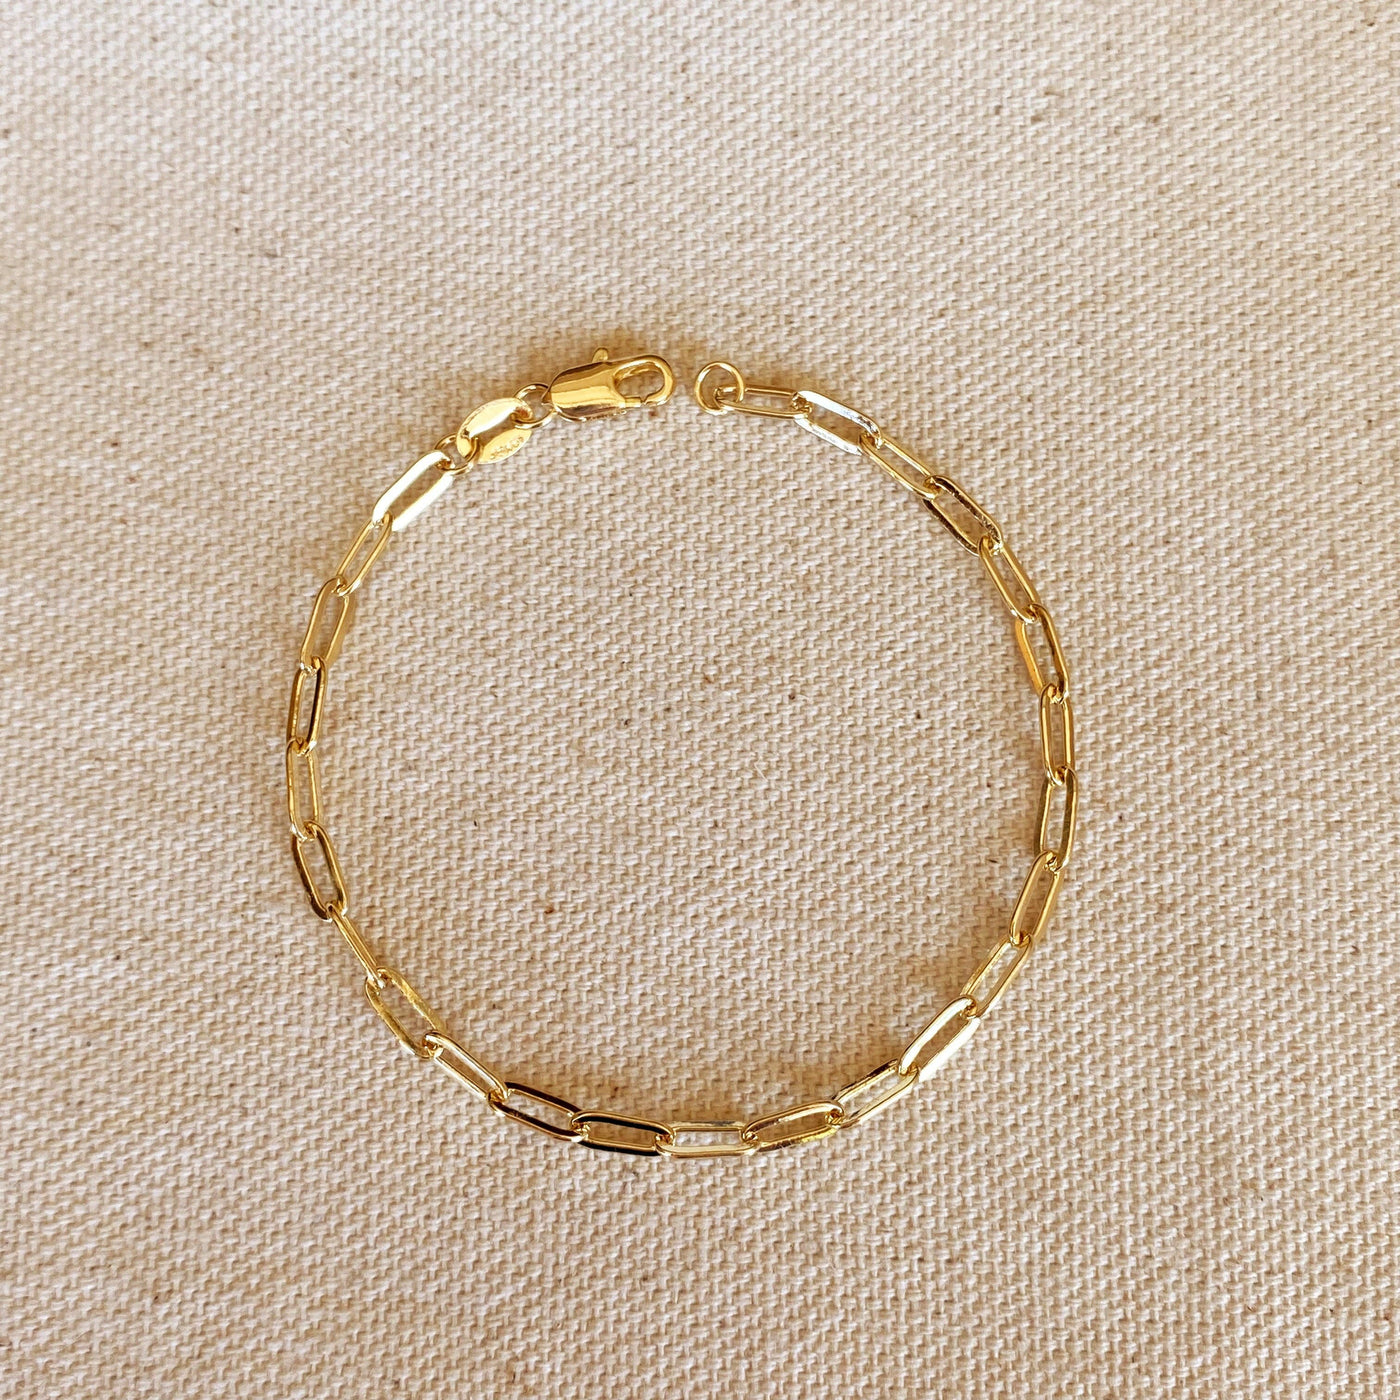 GoldFi 18k Gold Filled Paperclip Bracelet